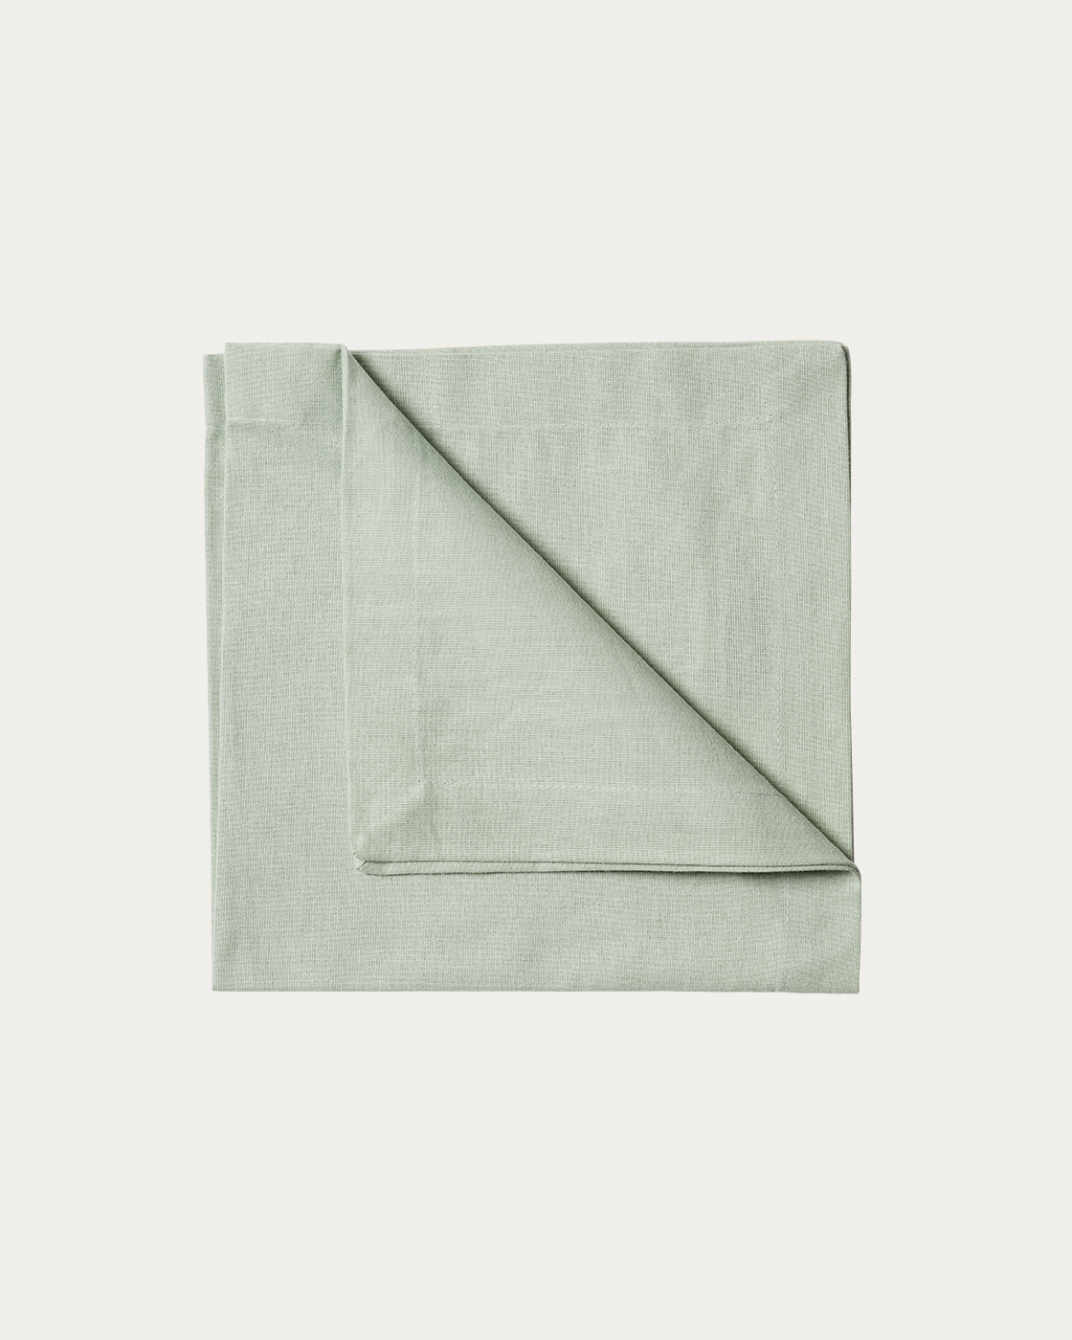 Image du produit serviette de table ROBERT vert clair glacé en coton doux de LINUM DESIGN. Taille 45 x 45 cm et vendu en lot de 4.